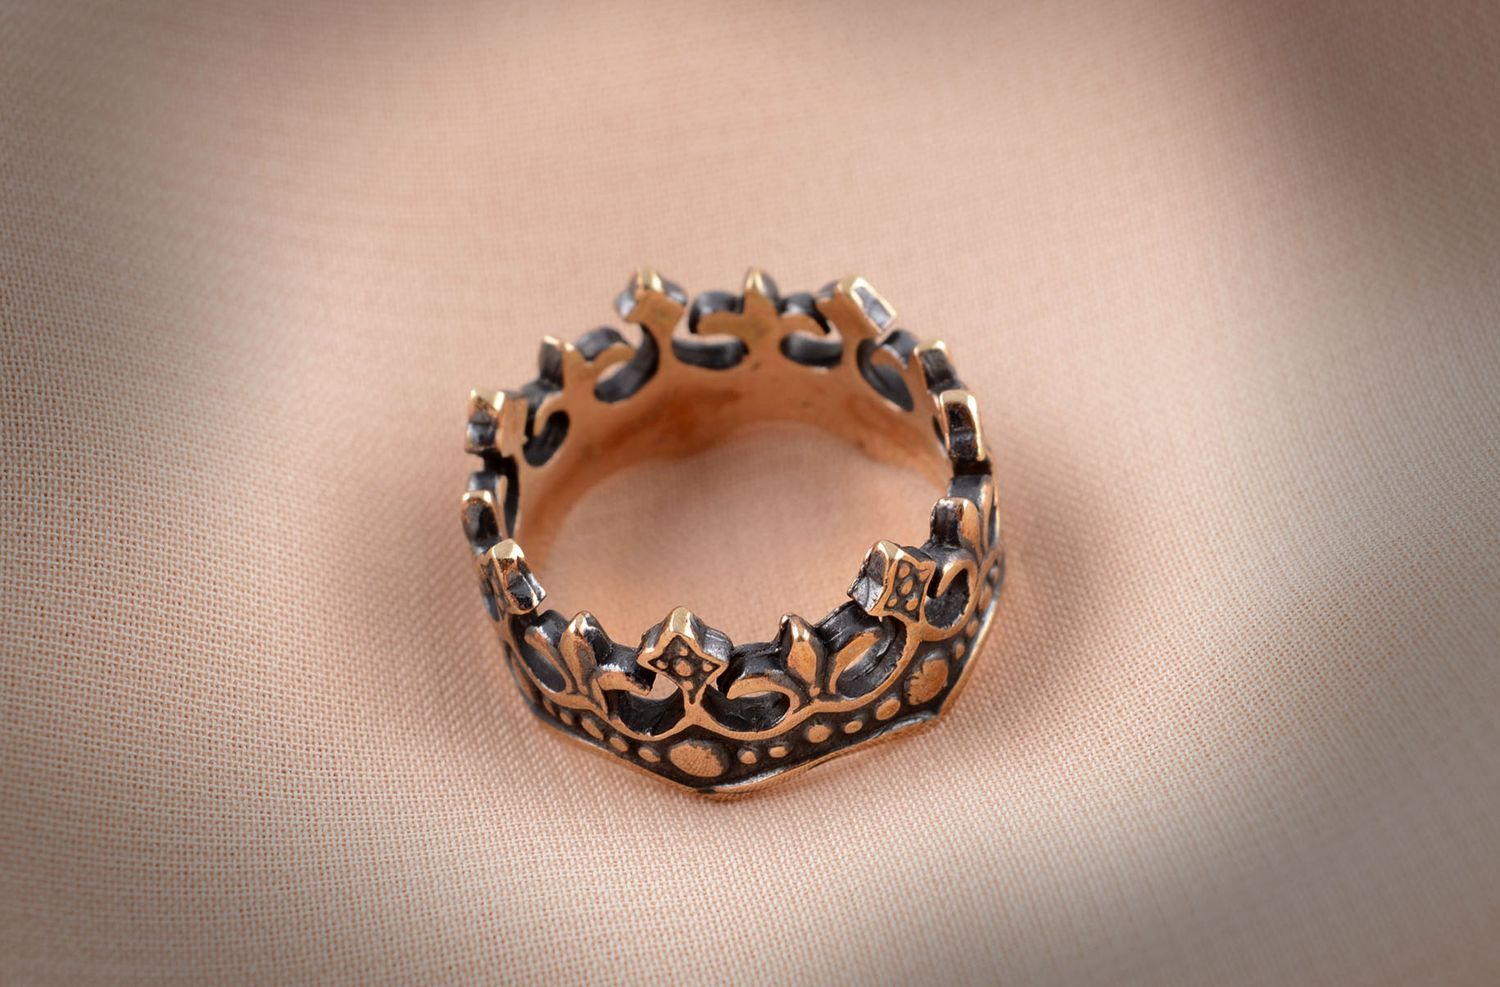 Кольцо ручной работы бронзовое кольцо почерненное женское кольцо оригинальное фото 5